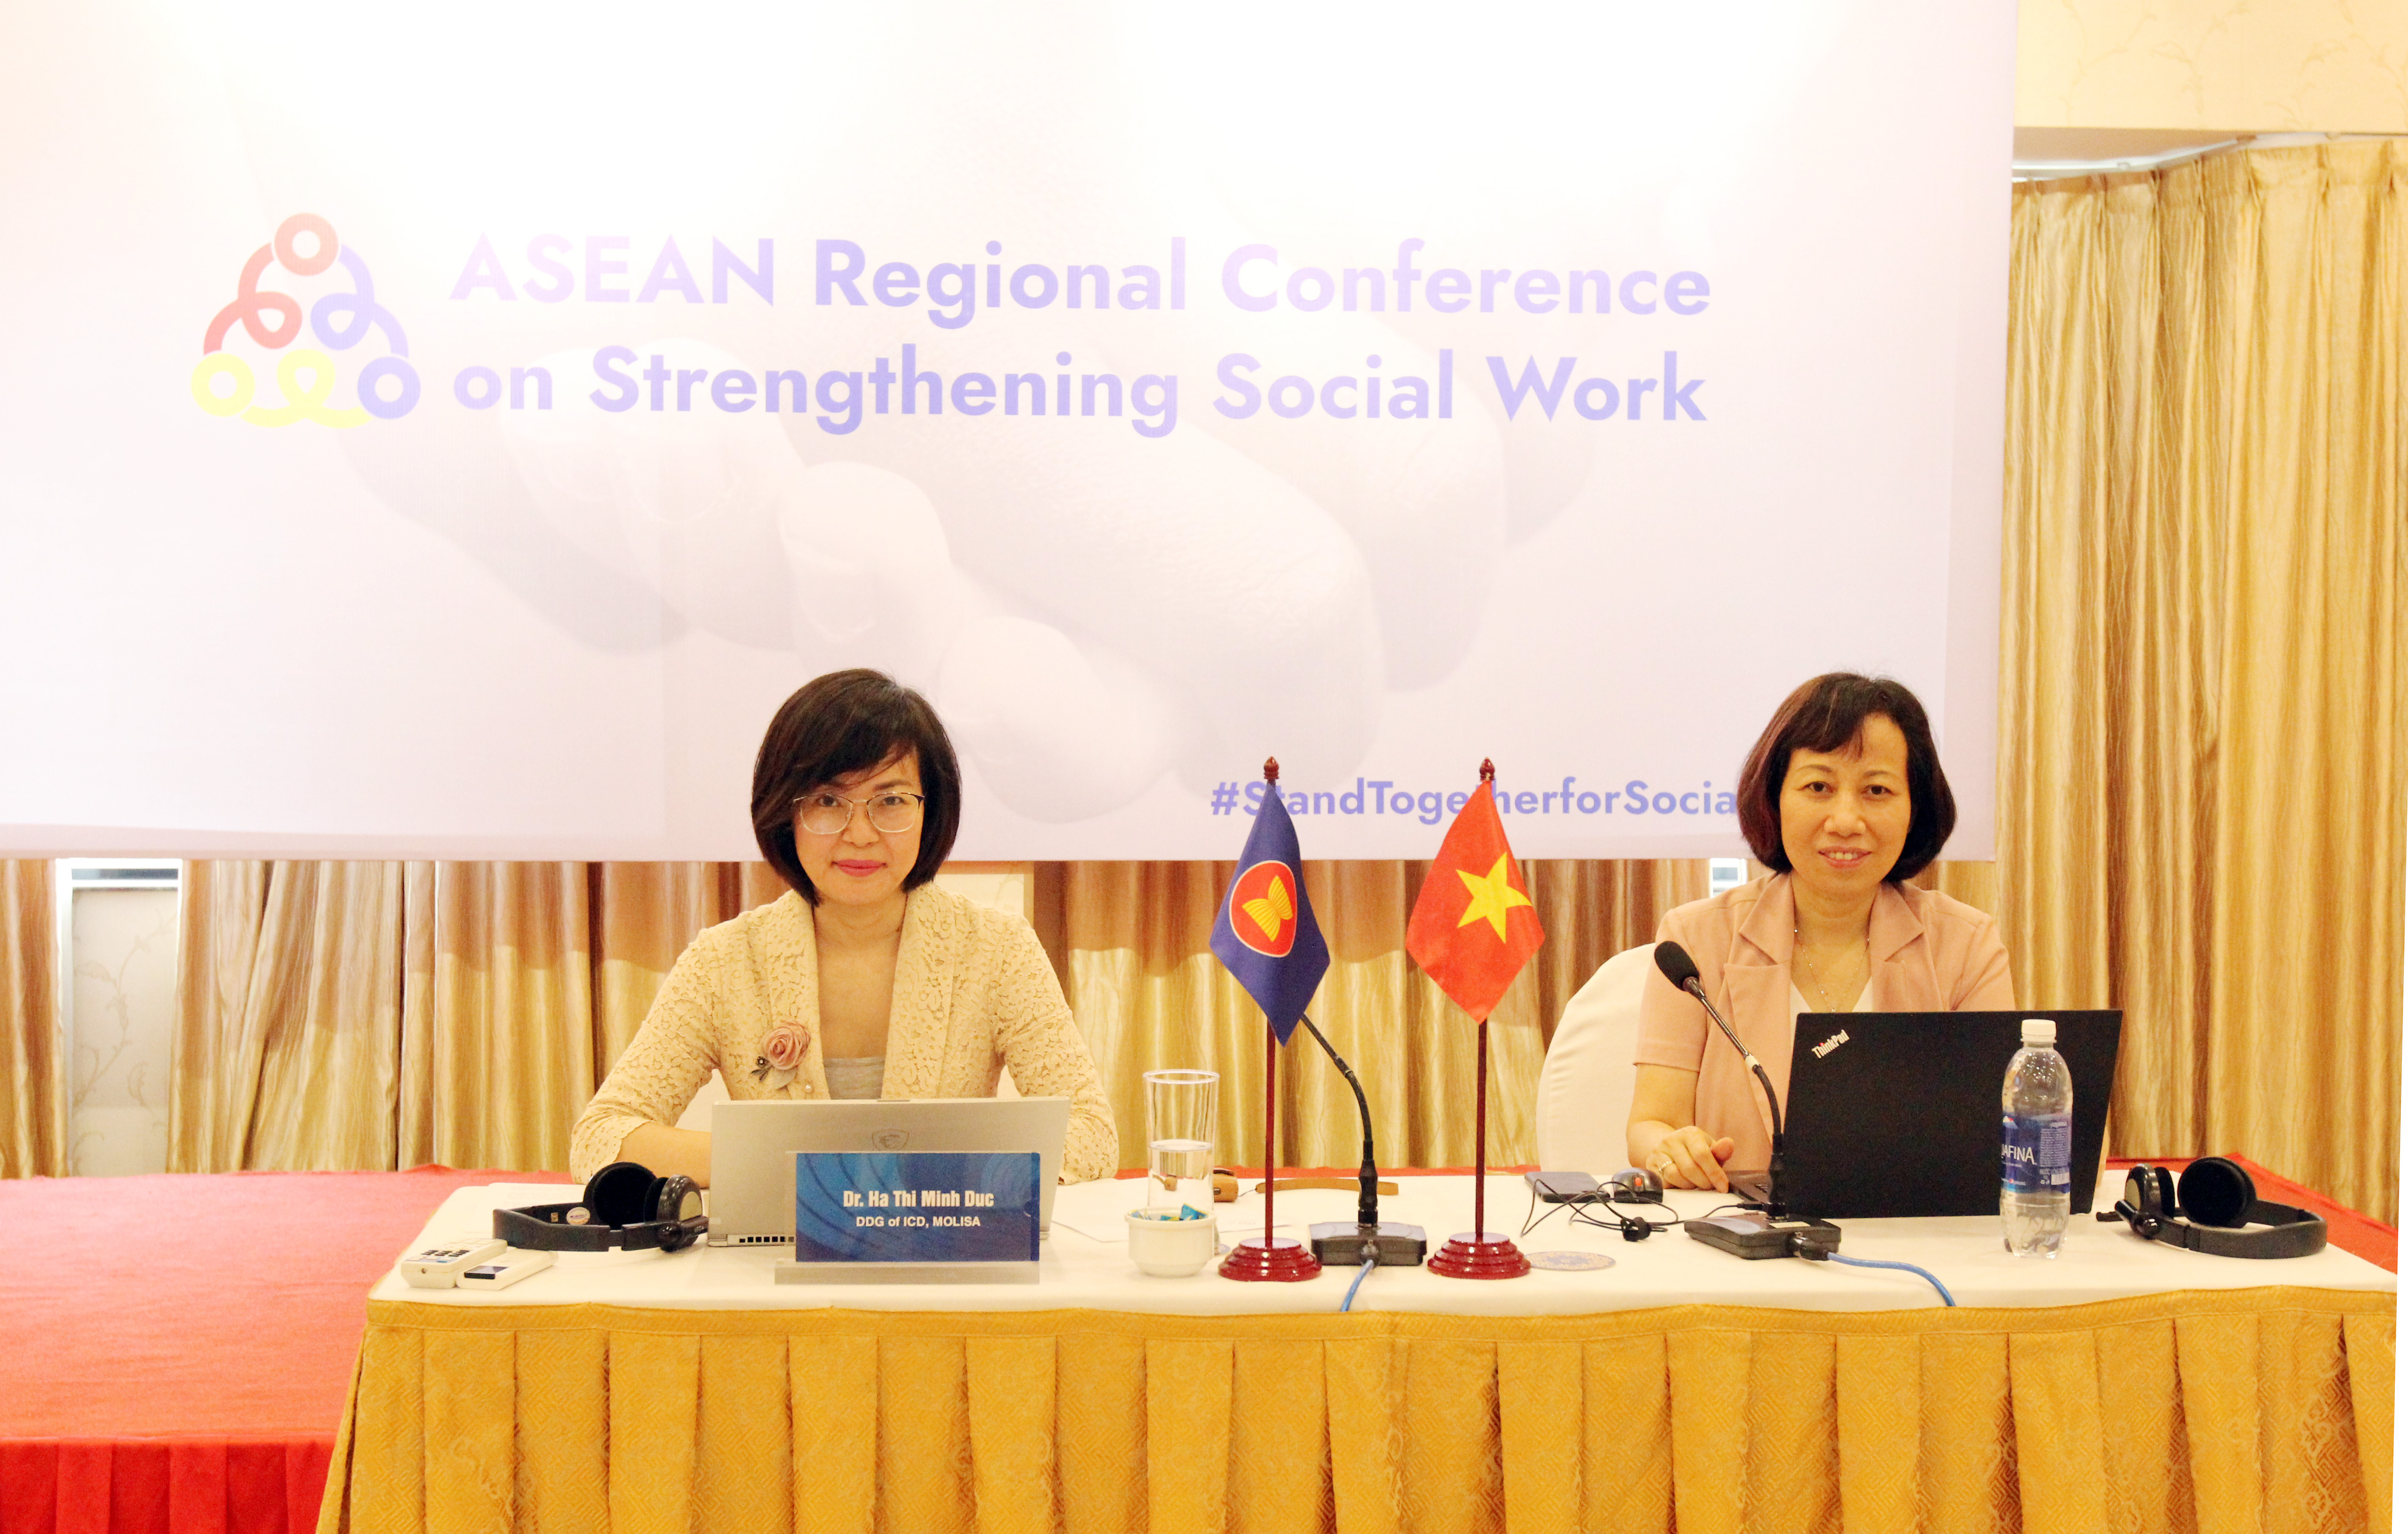 Thúc đẩy Công tác xã hội hướng đến một Cộng đồng ASEAN gắn kết và chủ động thích ứng